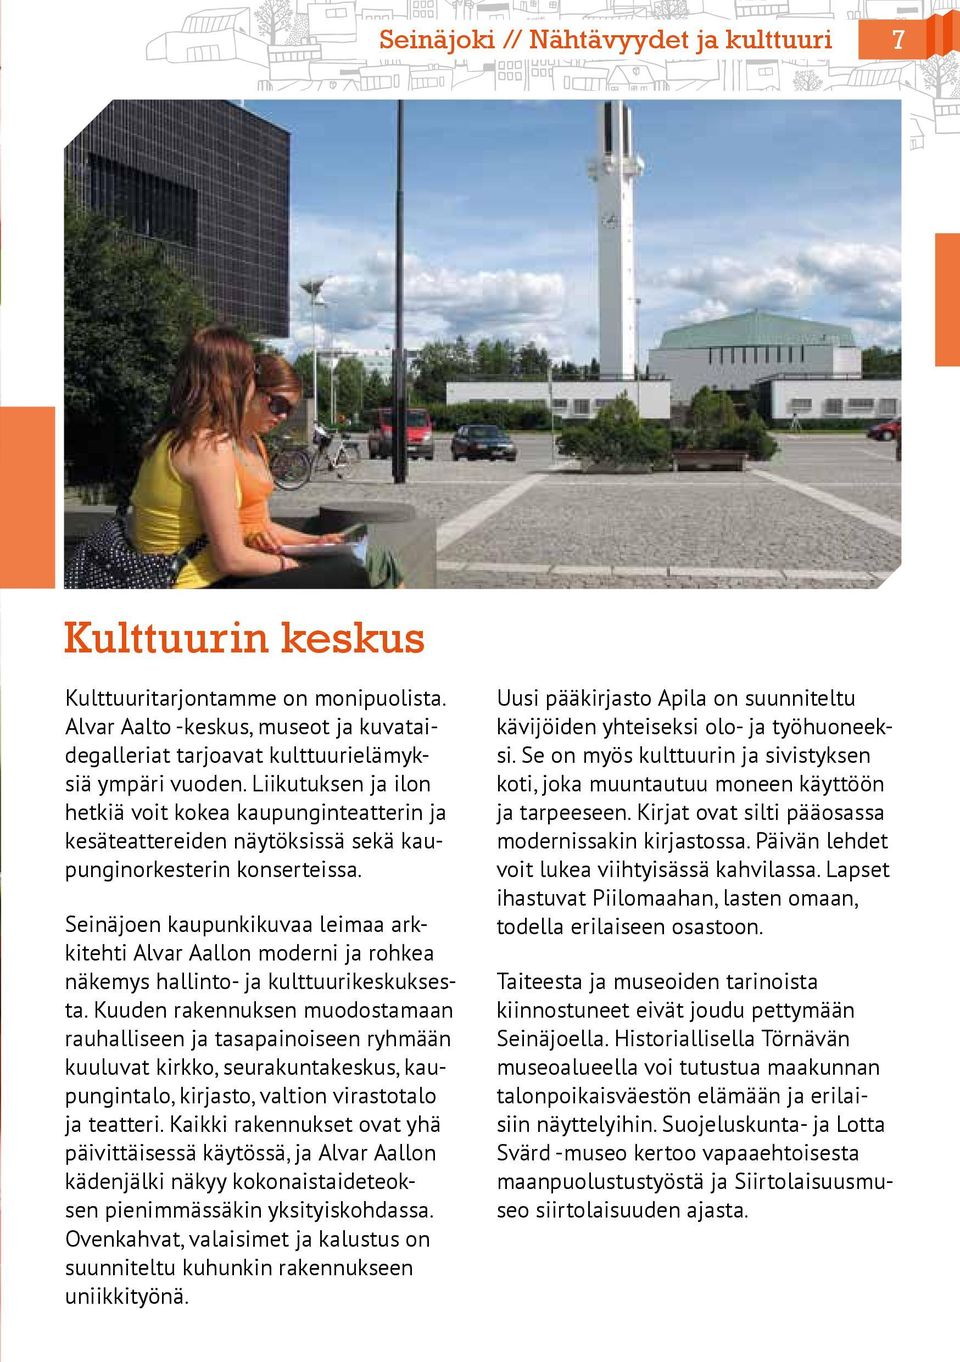 Seinäjoen kaupunkikuvaa leimaa arkkitehti Alvar Aallon moderni ja rohkea näkemys hallinto- ja kulttuurikeskuksesta.